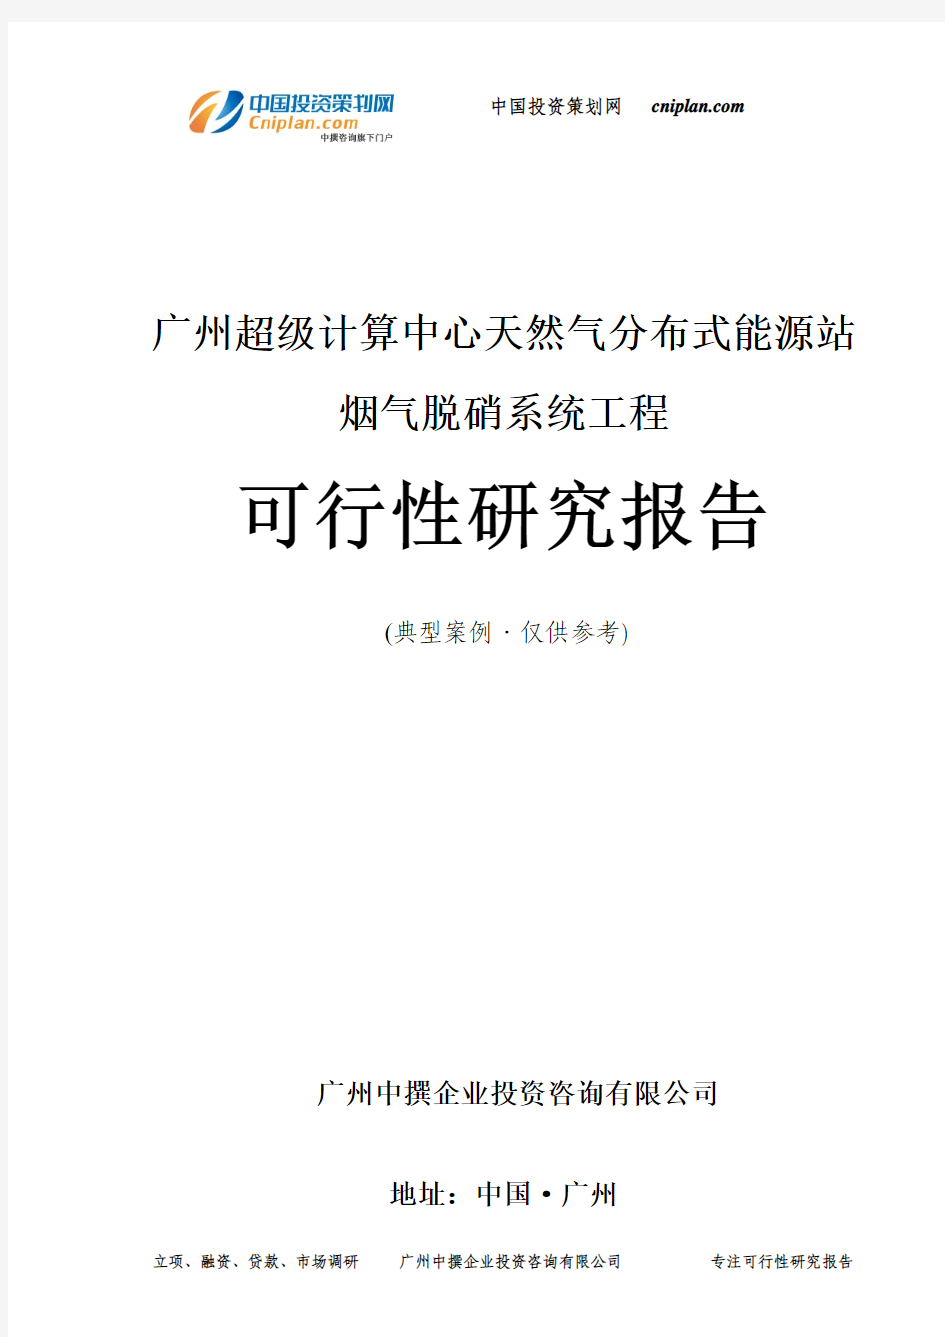 广州超级计算中心天然气分布式能源站烟气脱硝系统工程可行性研究报告-广州中撰咨询